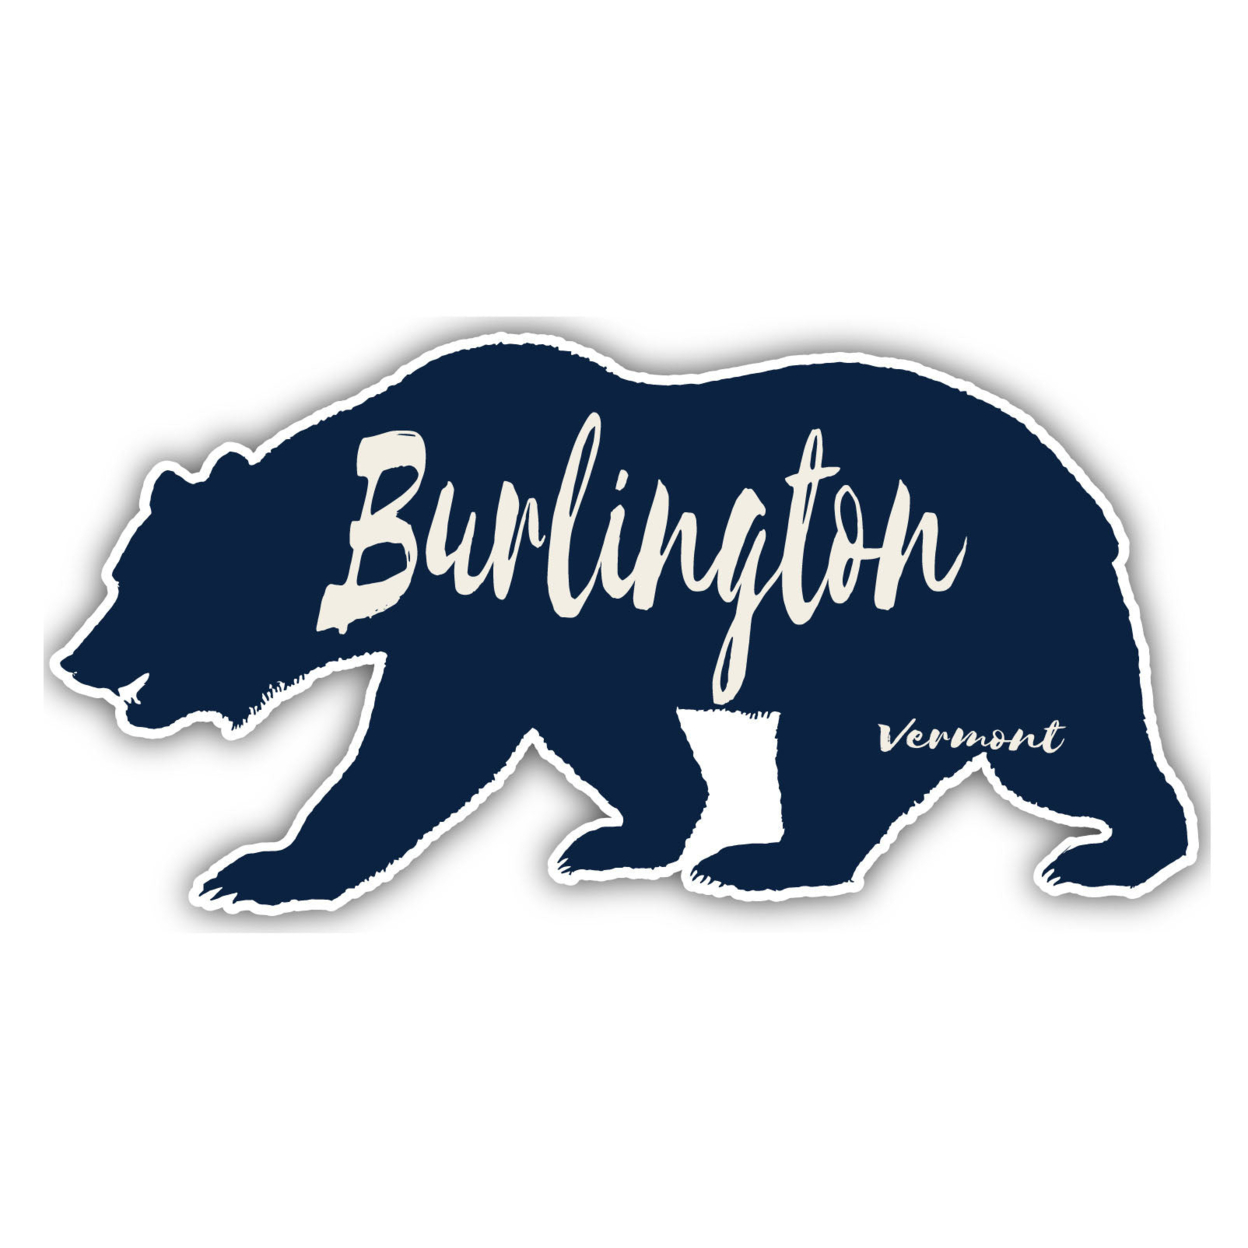 Burlington Vermont Souvenir Decorative Stickers (Choose Theme And Size) - 4-Pack, 8-Inch, Adventures Awaits